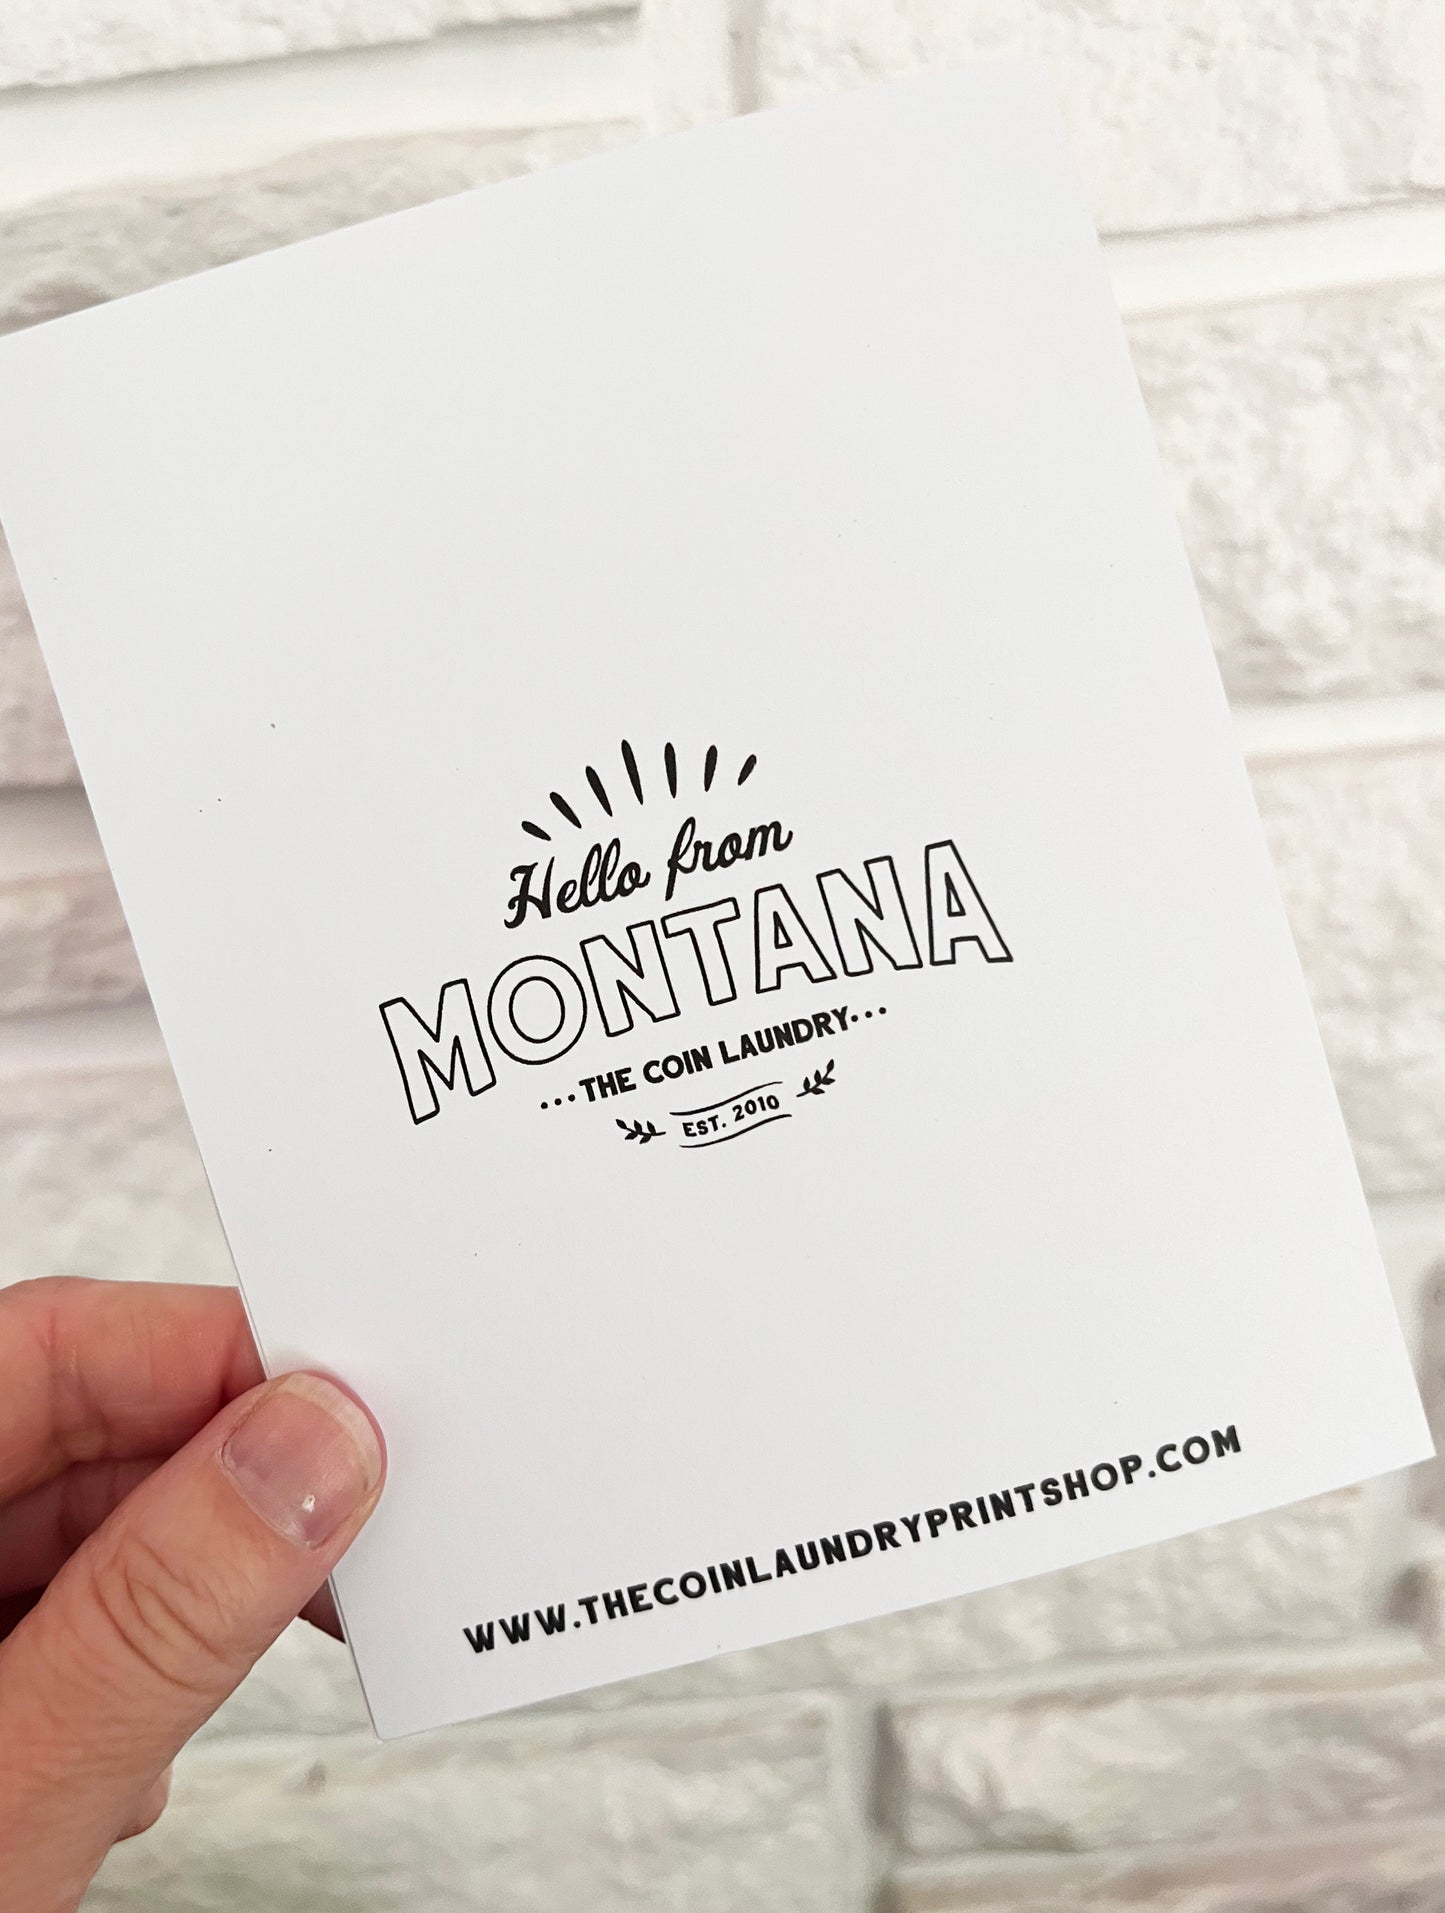 No Place Like Montana Card